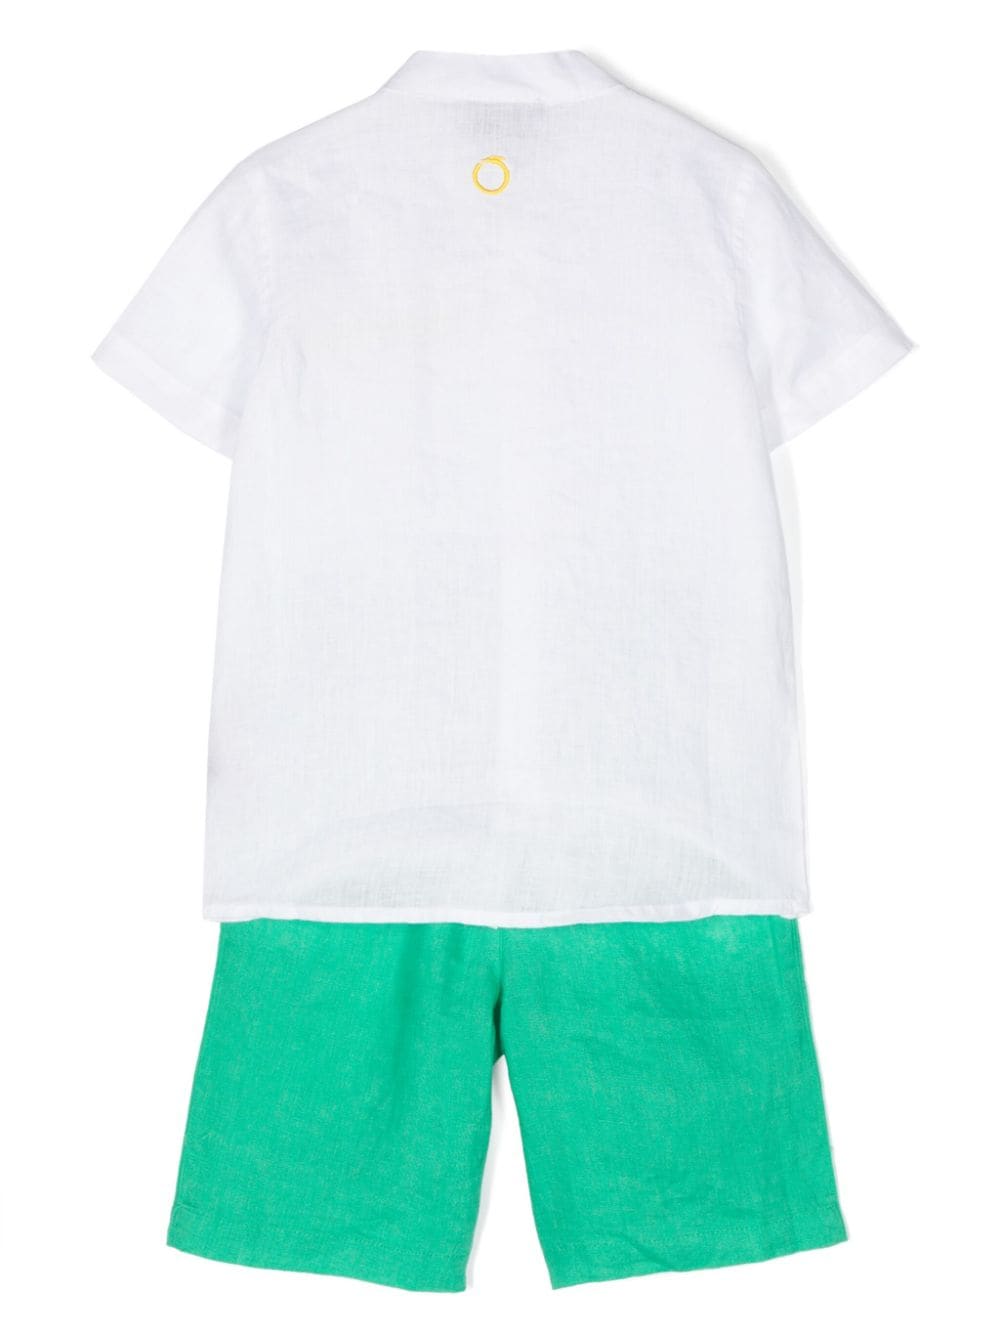 Completo elegante bianco e verde per bambino con logo